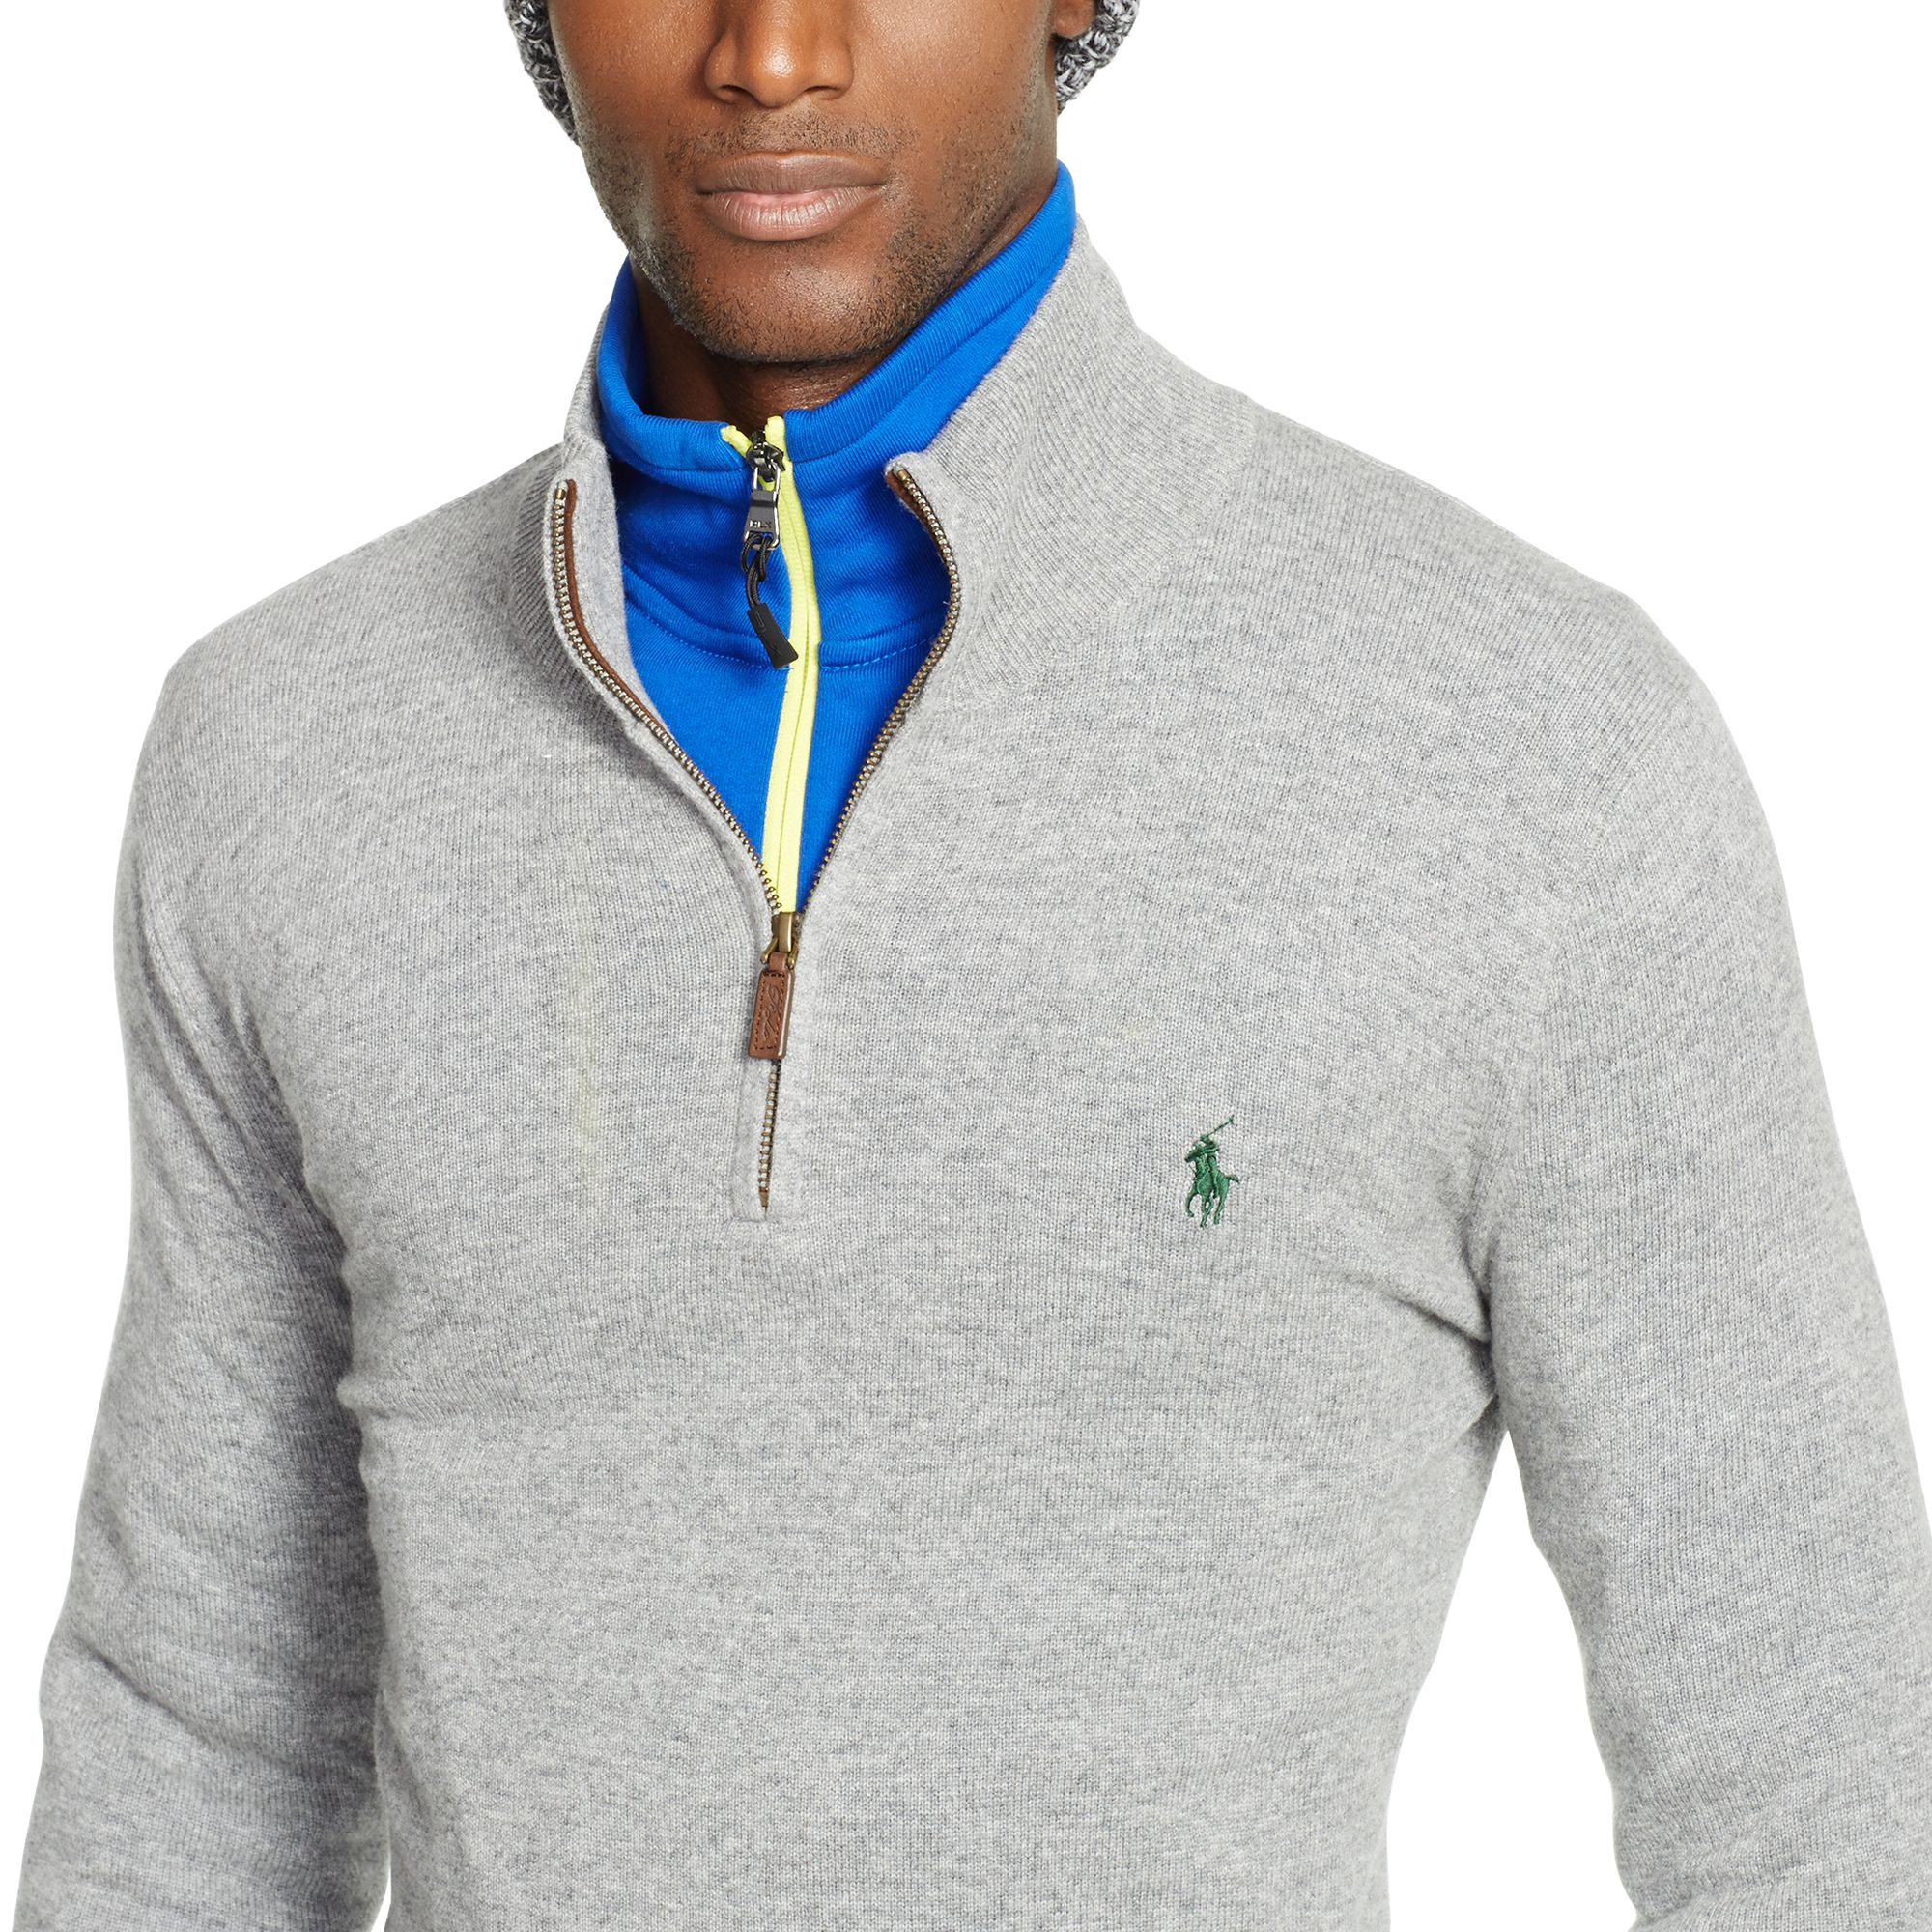 Polo Ralph Lauren Merino Wool Half-Zip Sweater in Grey Heather (Grey) for  Men - Lyst